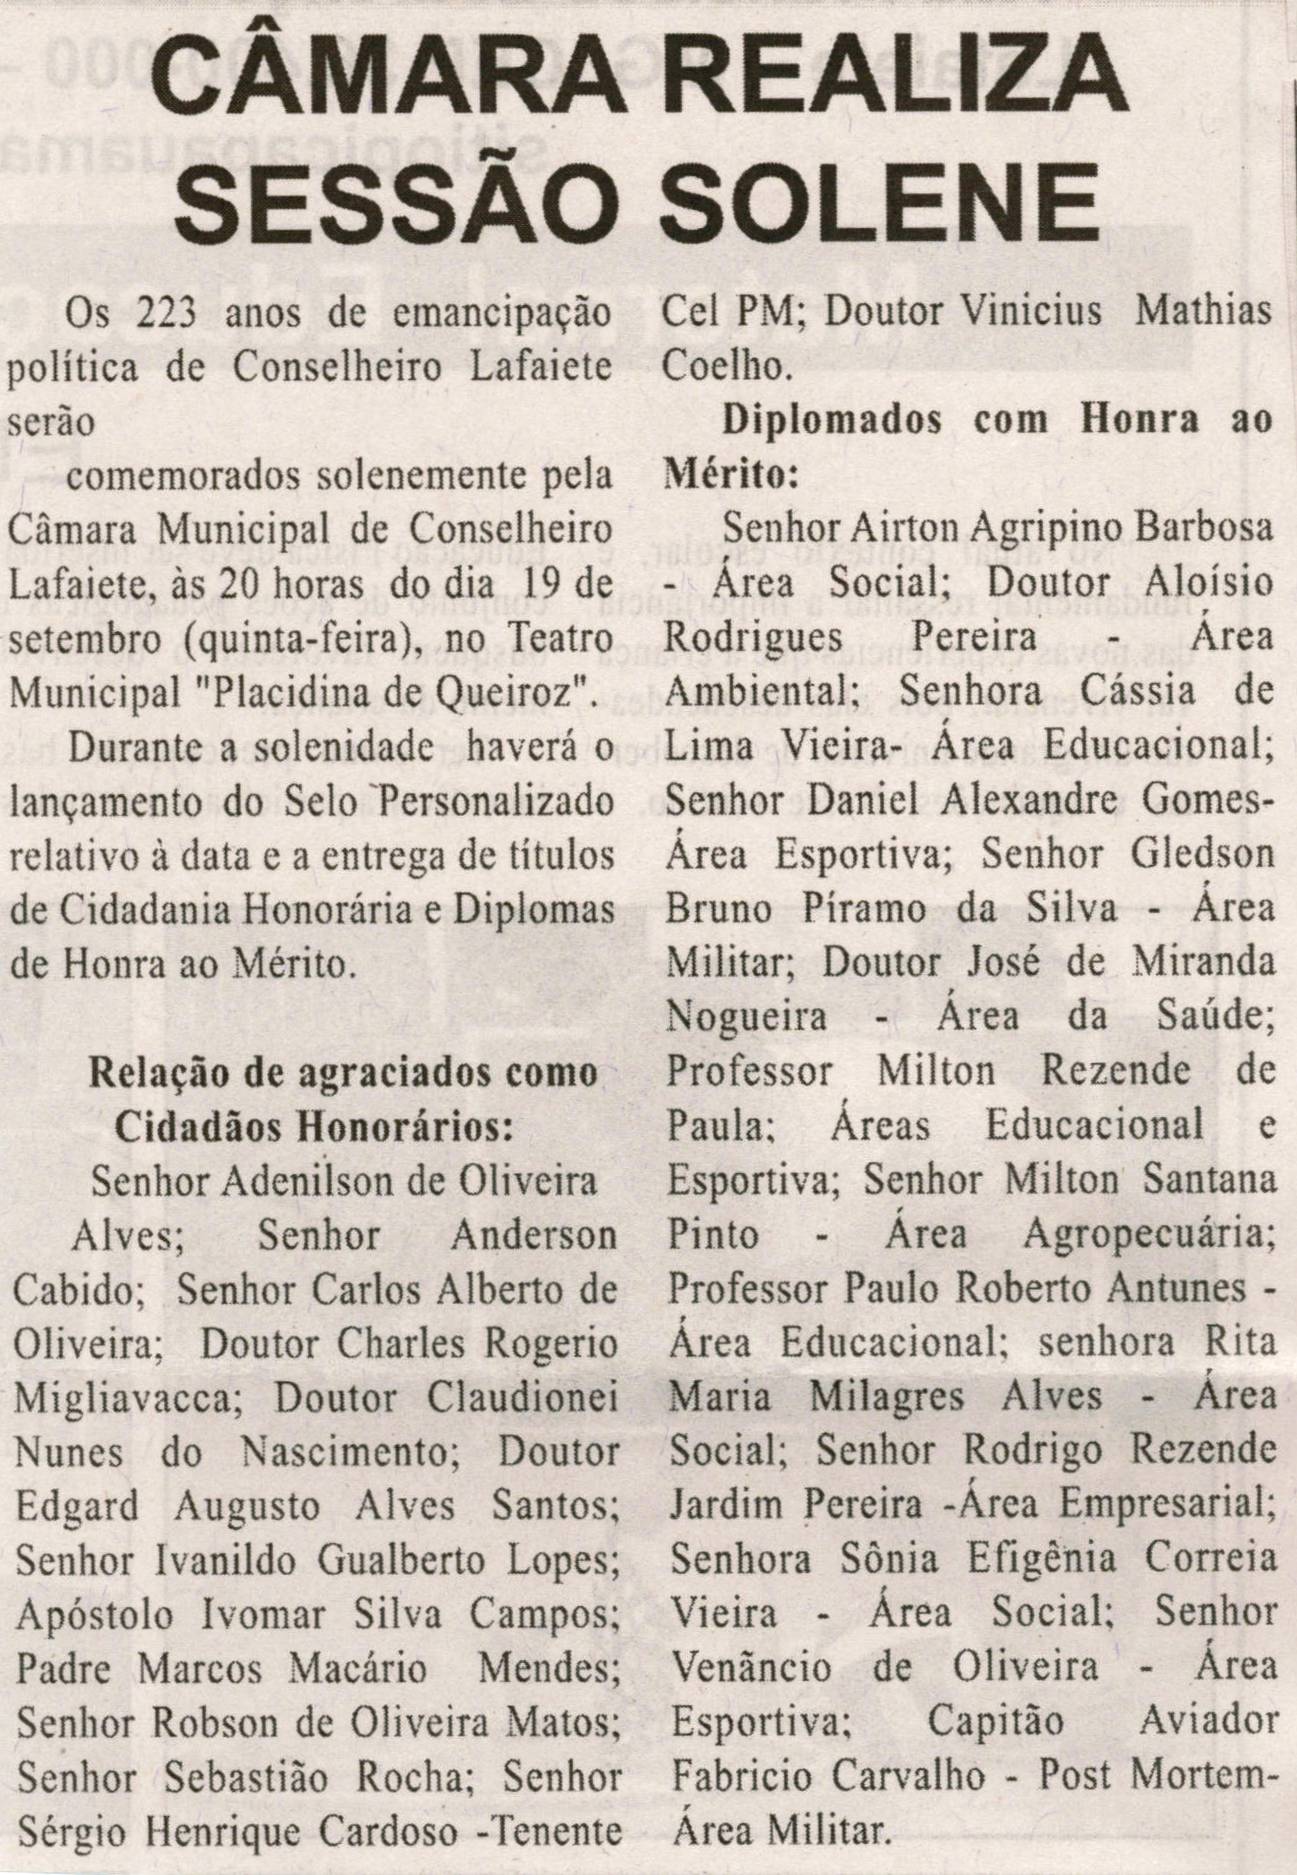 Câmara realiza sessão solene. Folha Livre, Conselheiro Lafaiete, 14 set. 2013, p. 11.